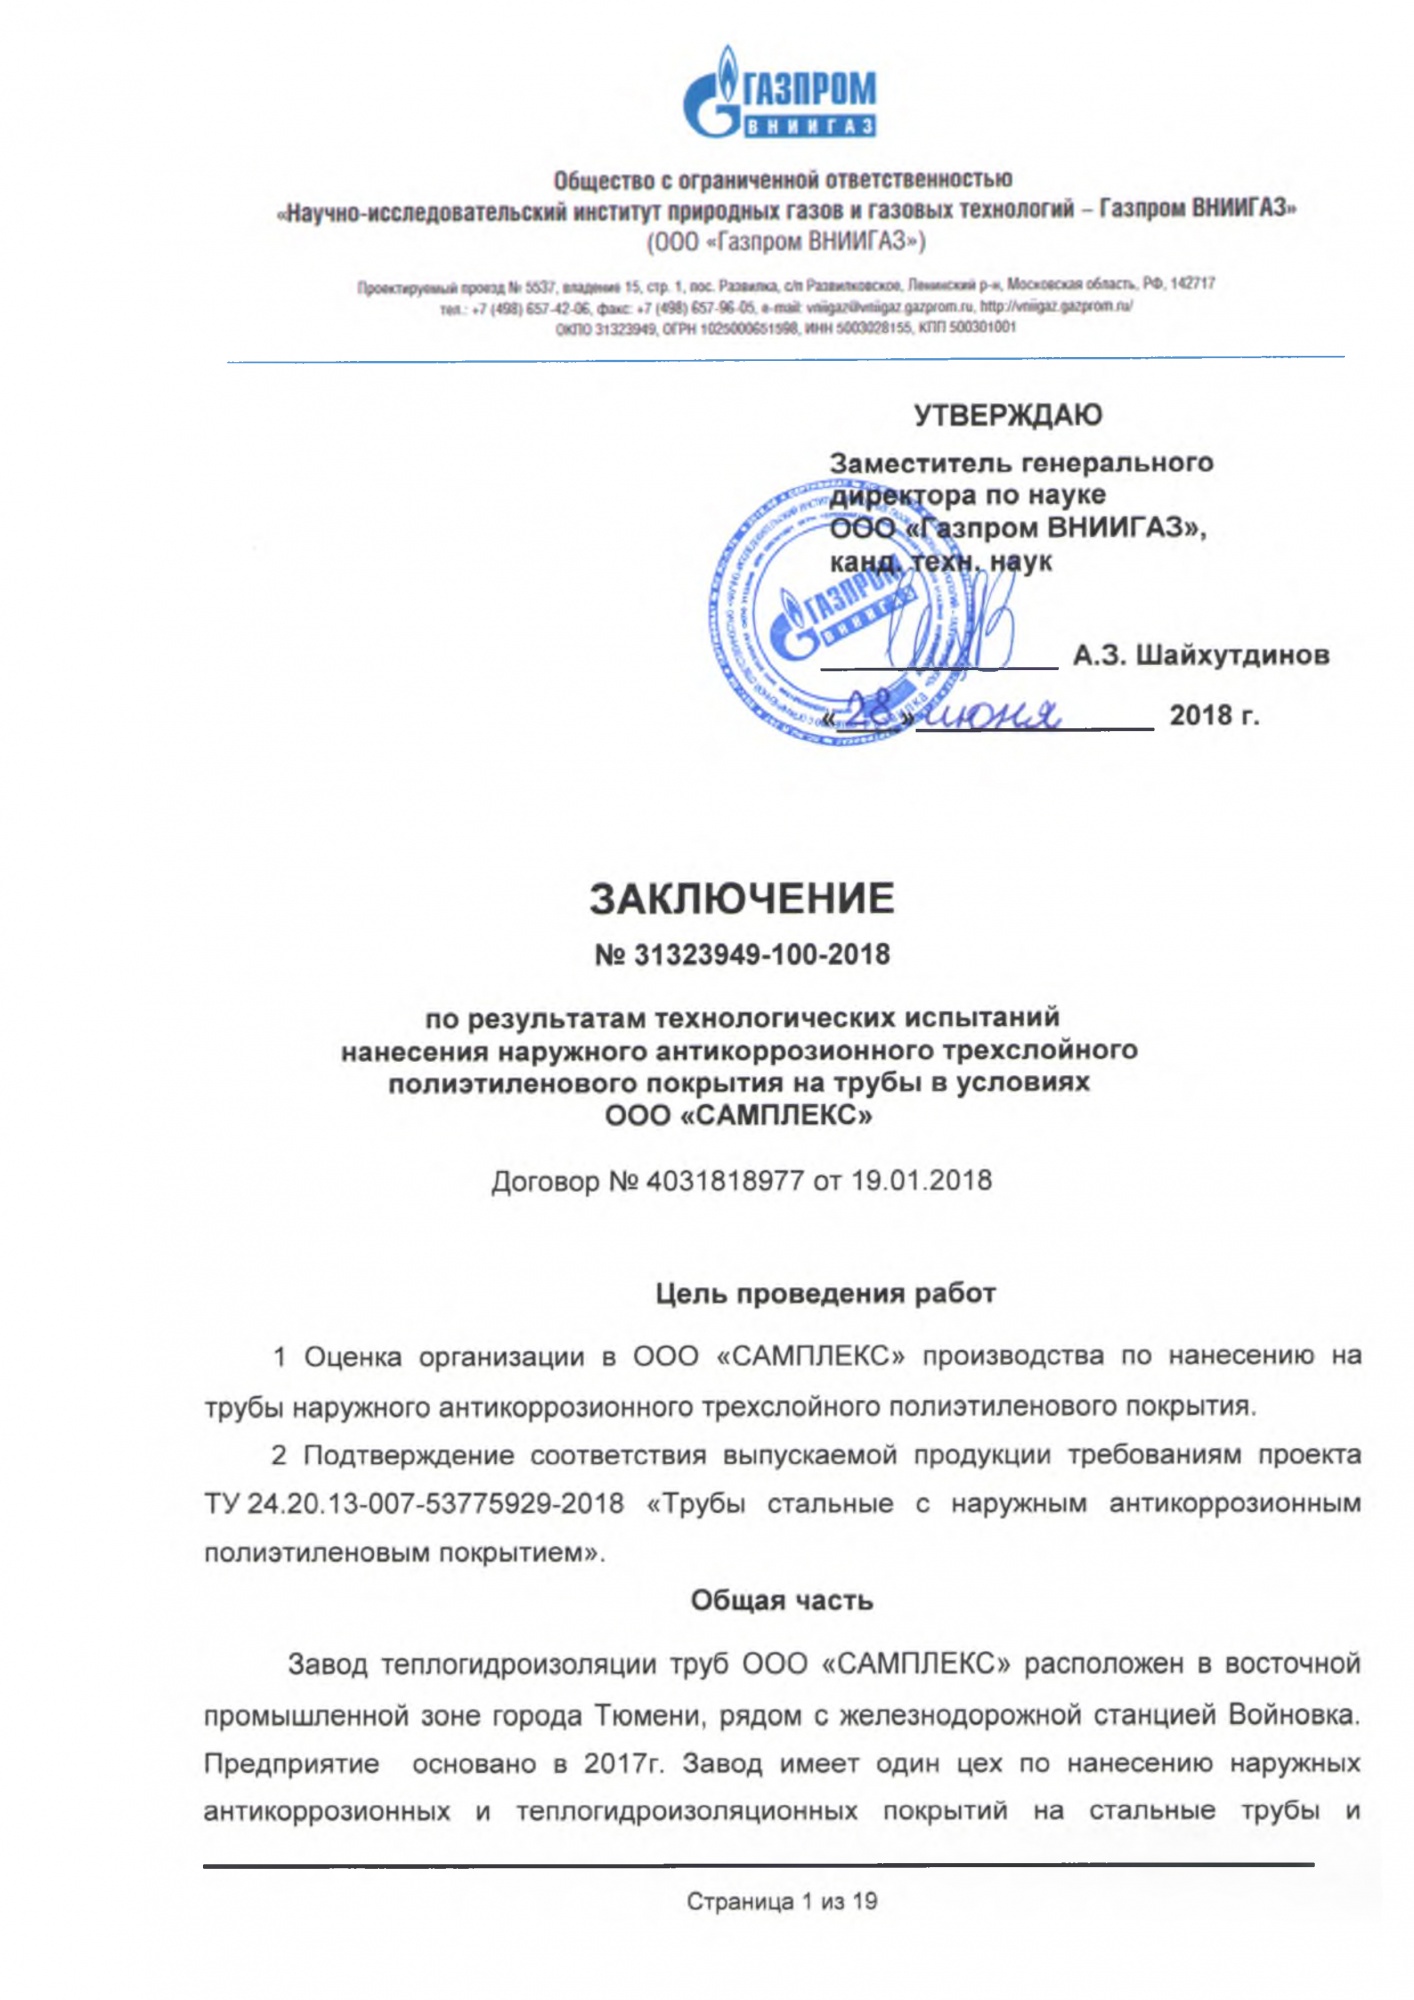 Заключение ООО Газпром ВНИИГАЗ по результатам испытаний ТУ 24.20.13-007-53775929-2018.jpg